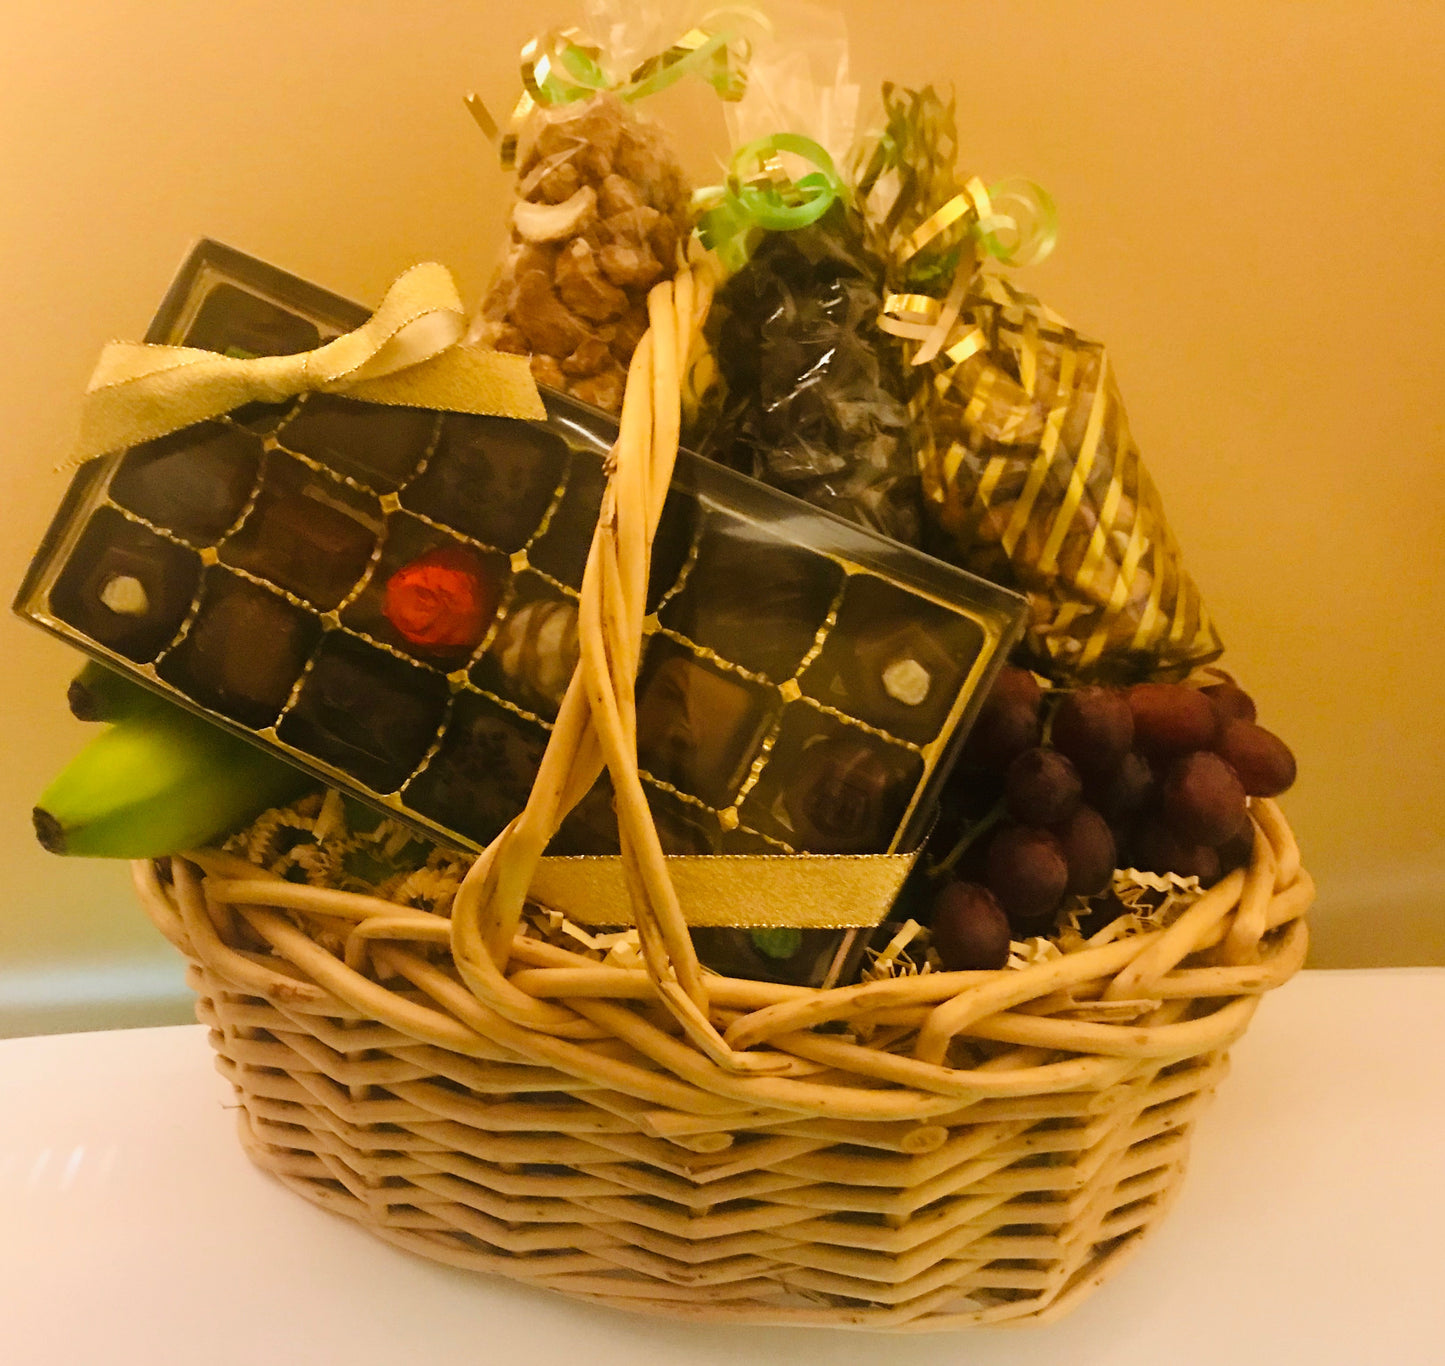 Basket with Fresh Fruit